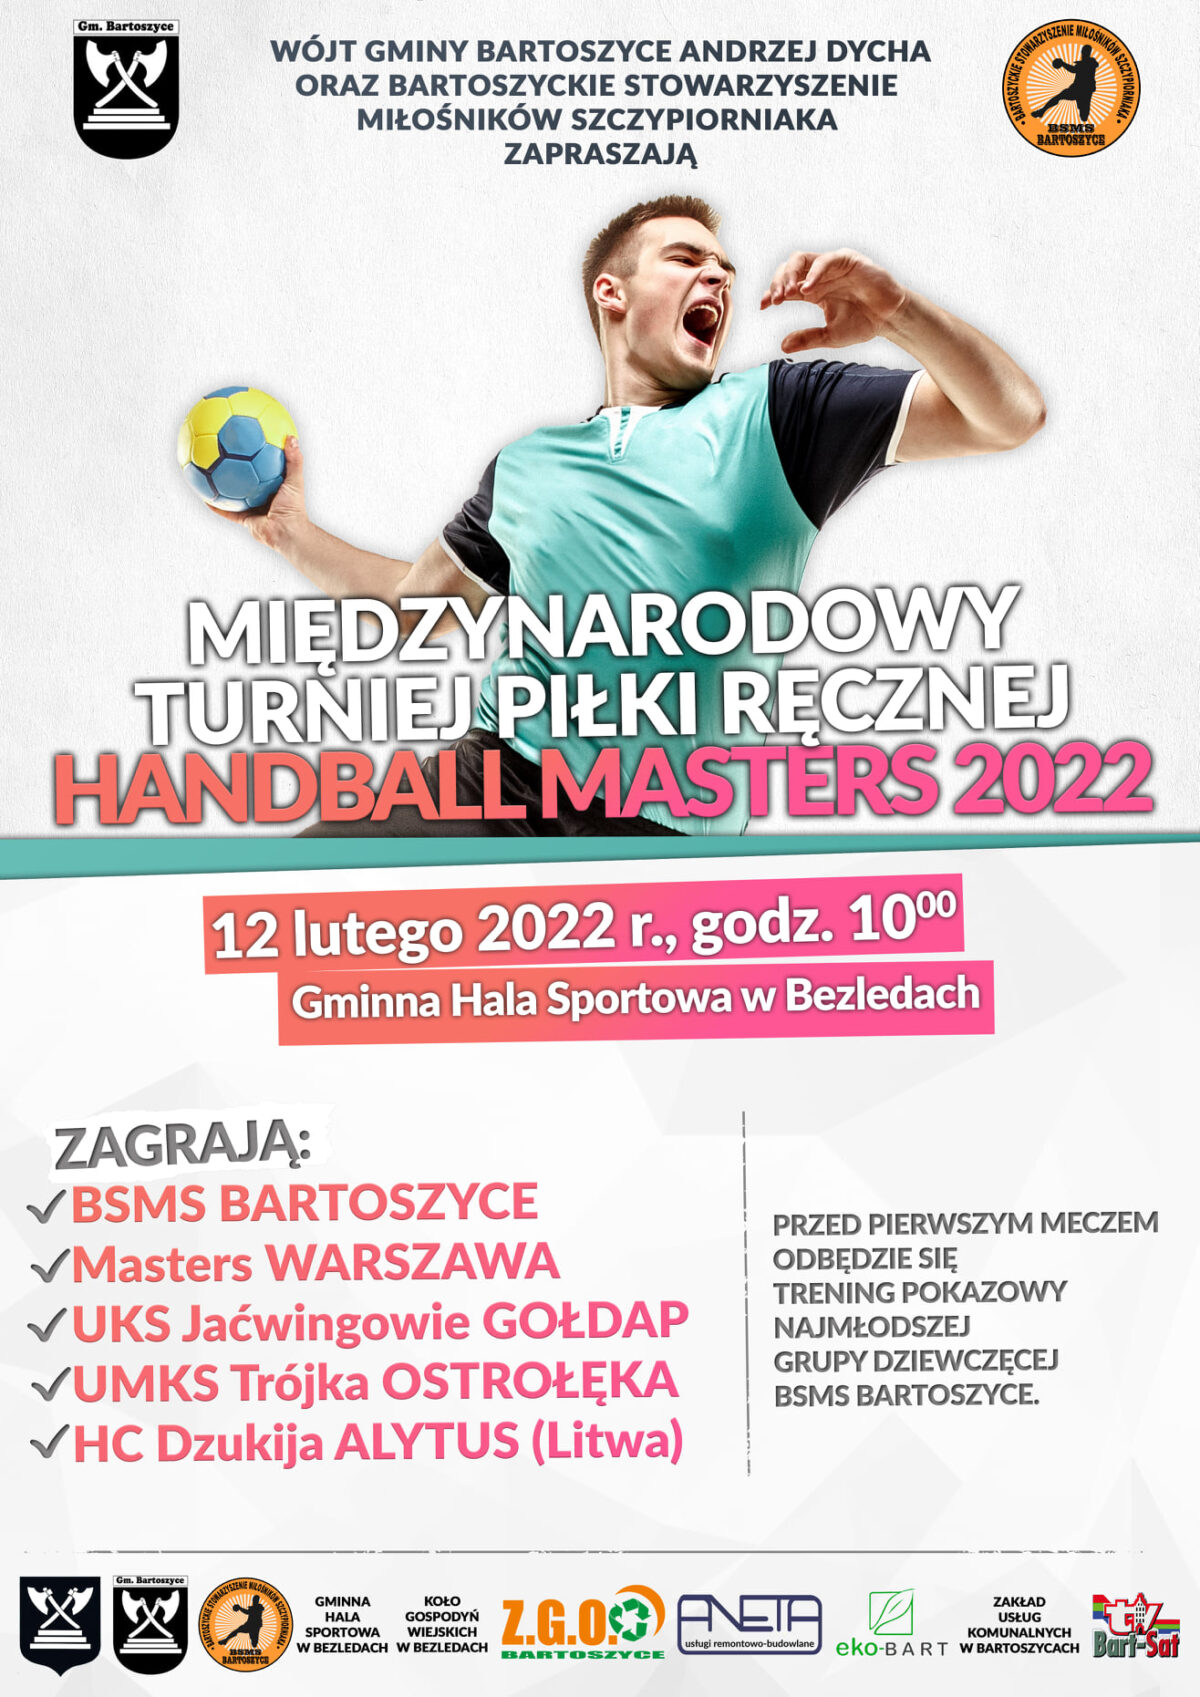 Zapraszamy na Międzynarodowy Turniej Handball Masters 2022!